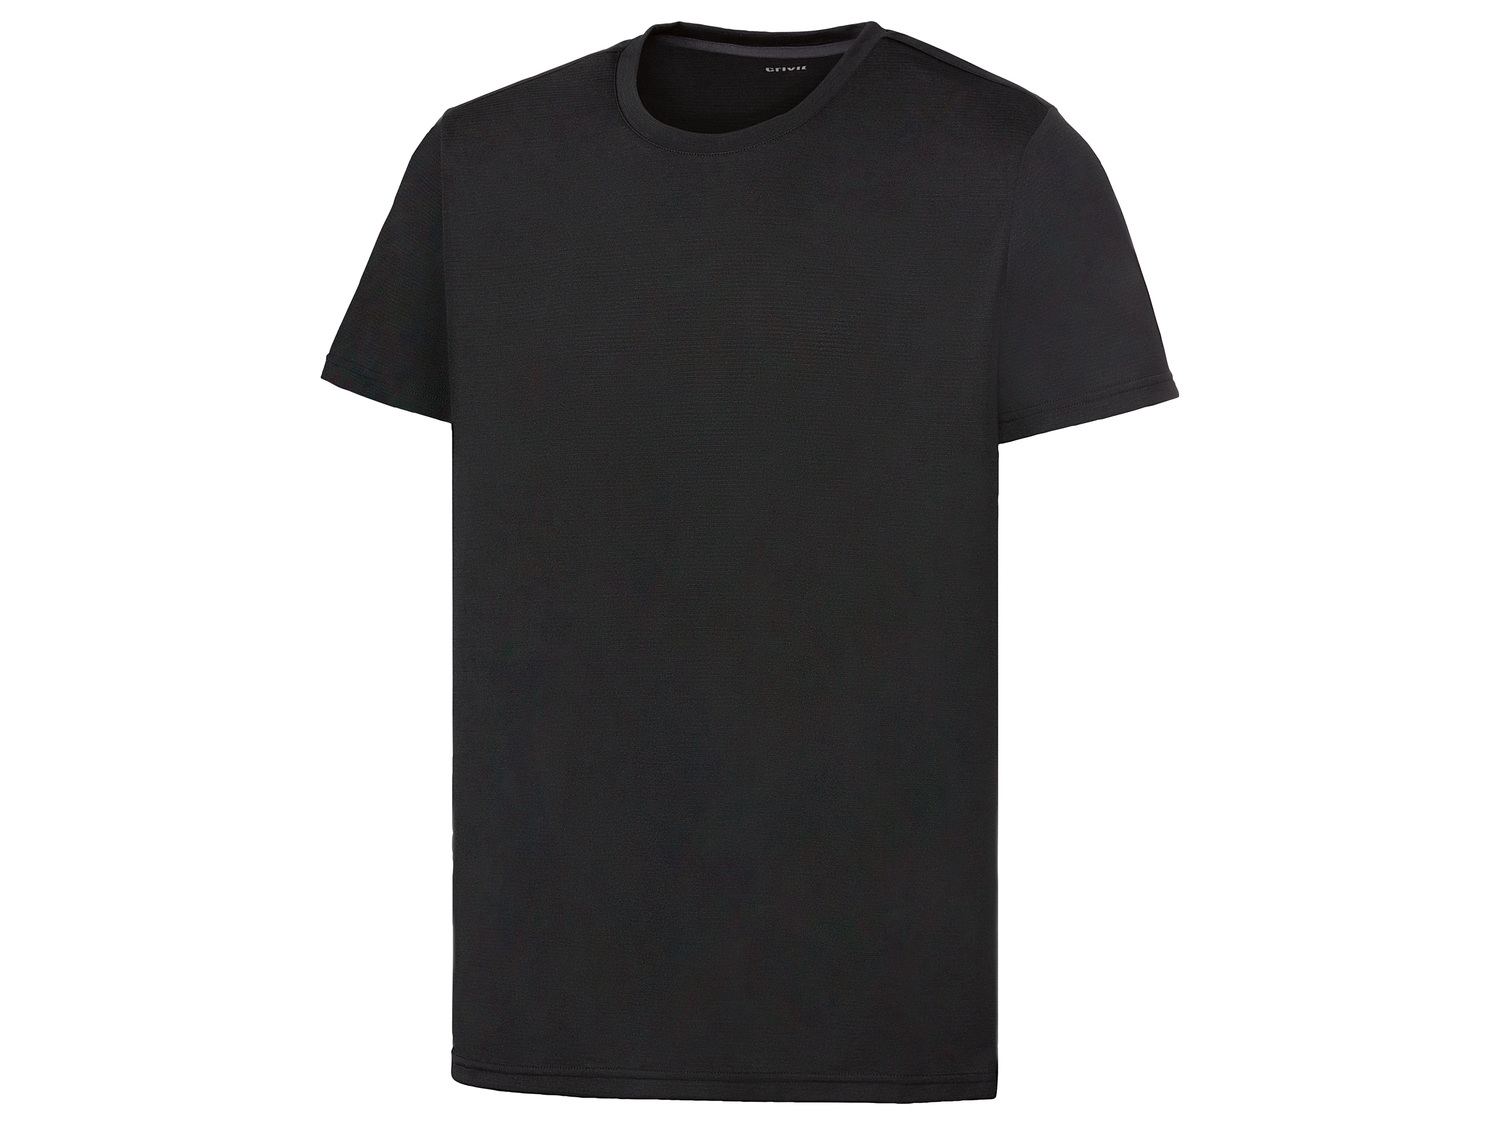 T-shirt technique , le prix 3.99 &#8364; 
- Du M au XL selon mod&egrave;le.
- ...